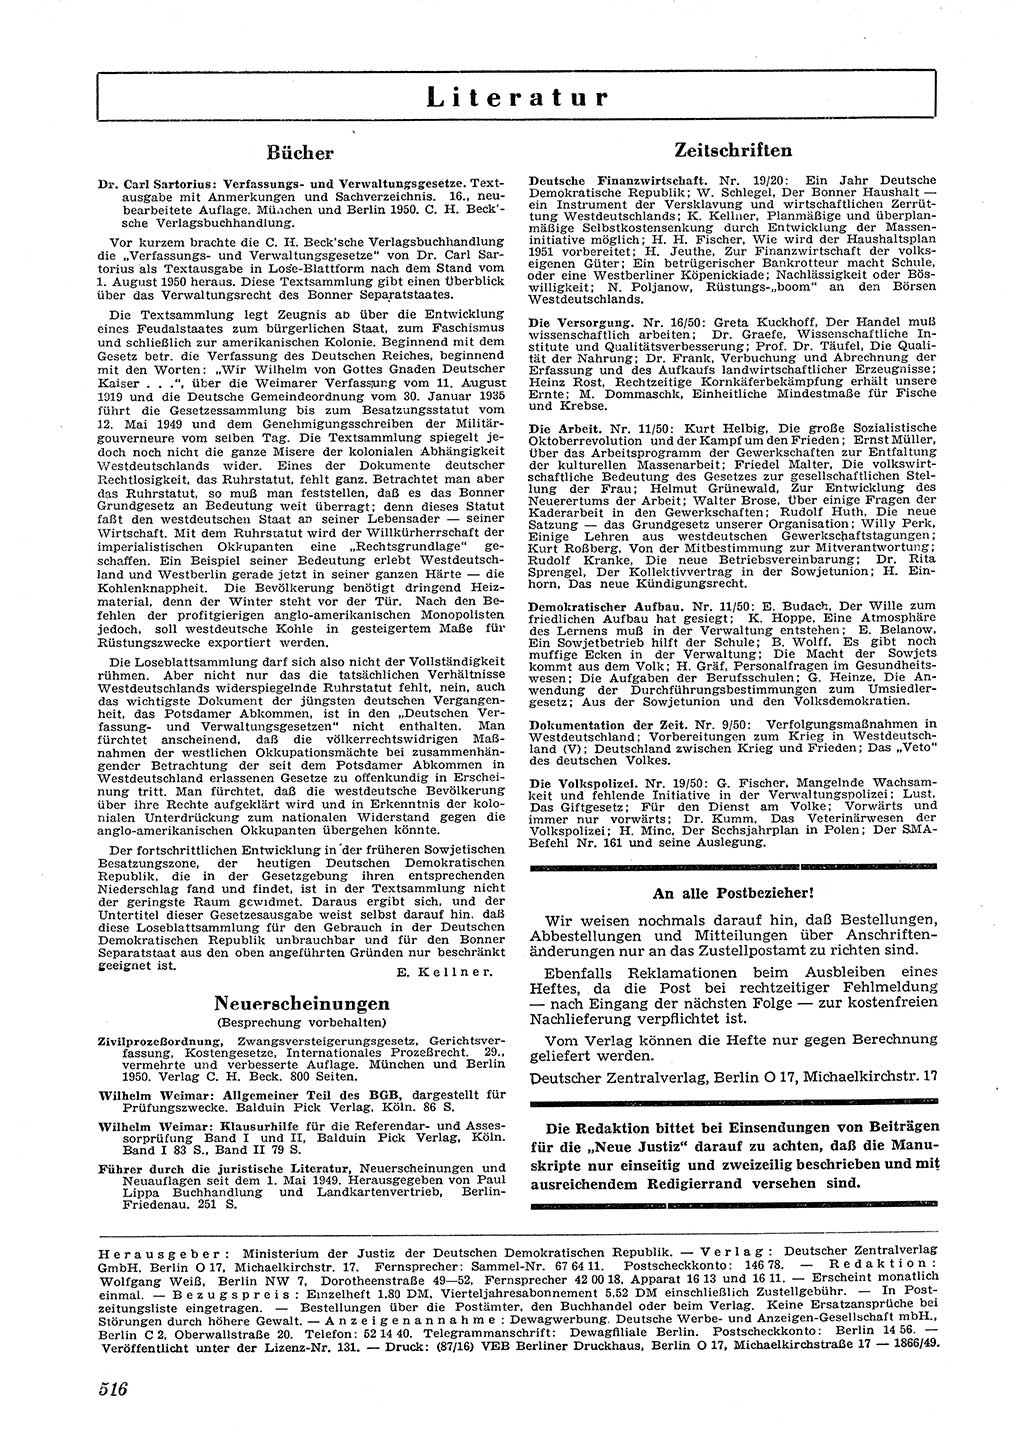 Neue Justiz (NJ), Zeitschrift für Recht und Rechtswissenschaft [Deutsche Demokratische Republik (DDR)], 4. Jahrgang 1950, Seite 516 (NJ DDR 1950, S. 516)